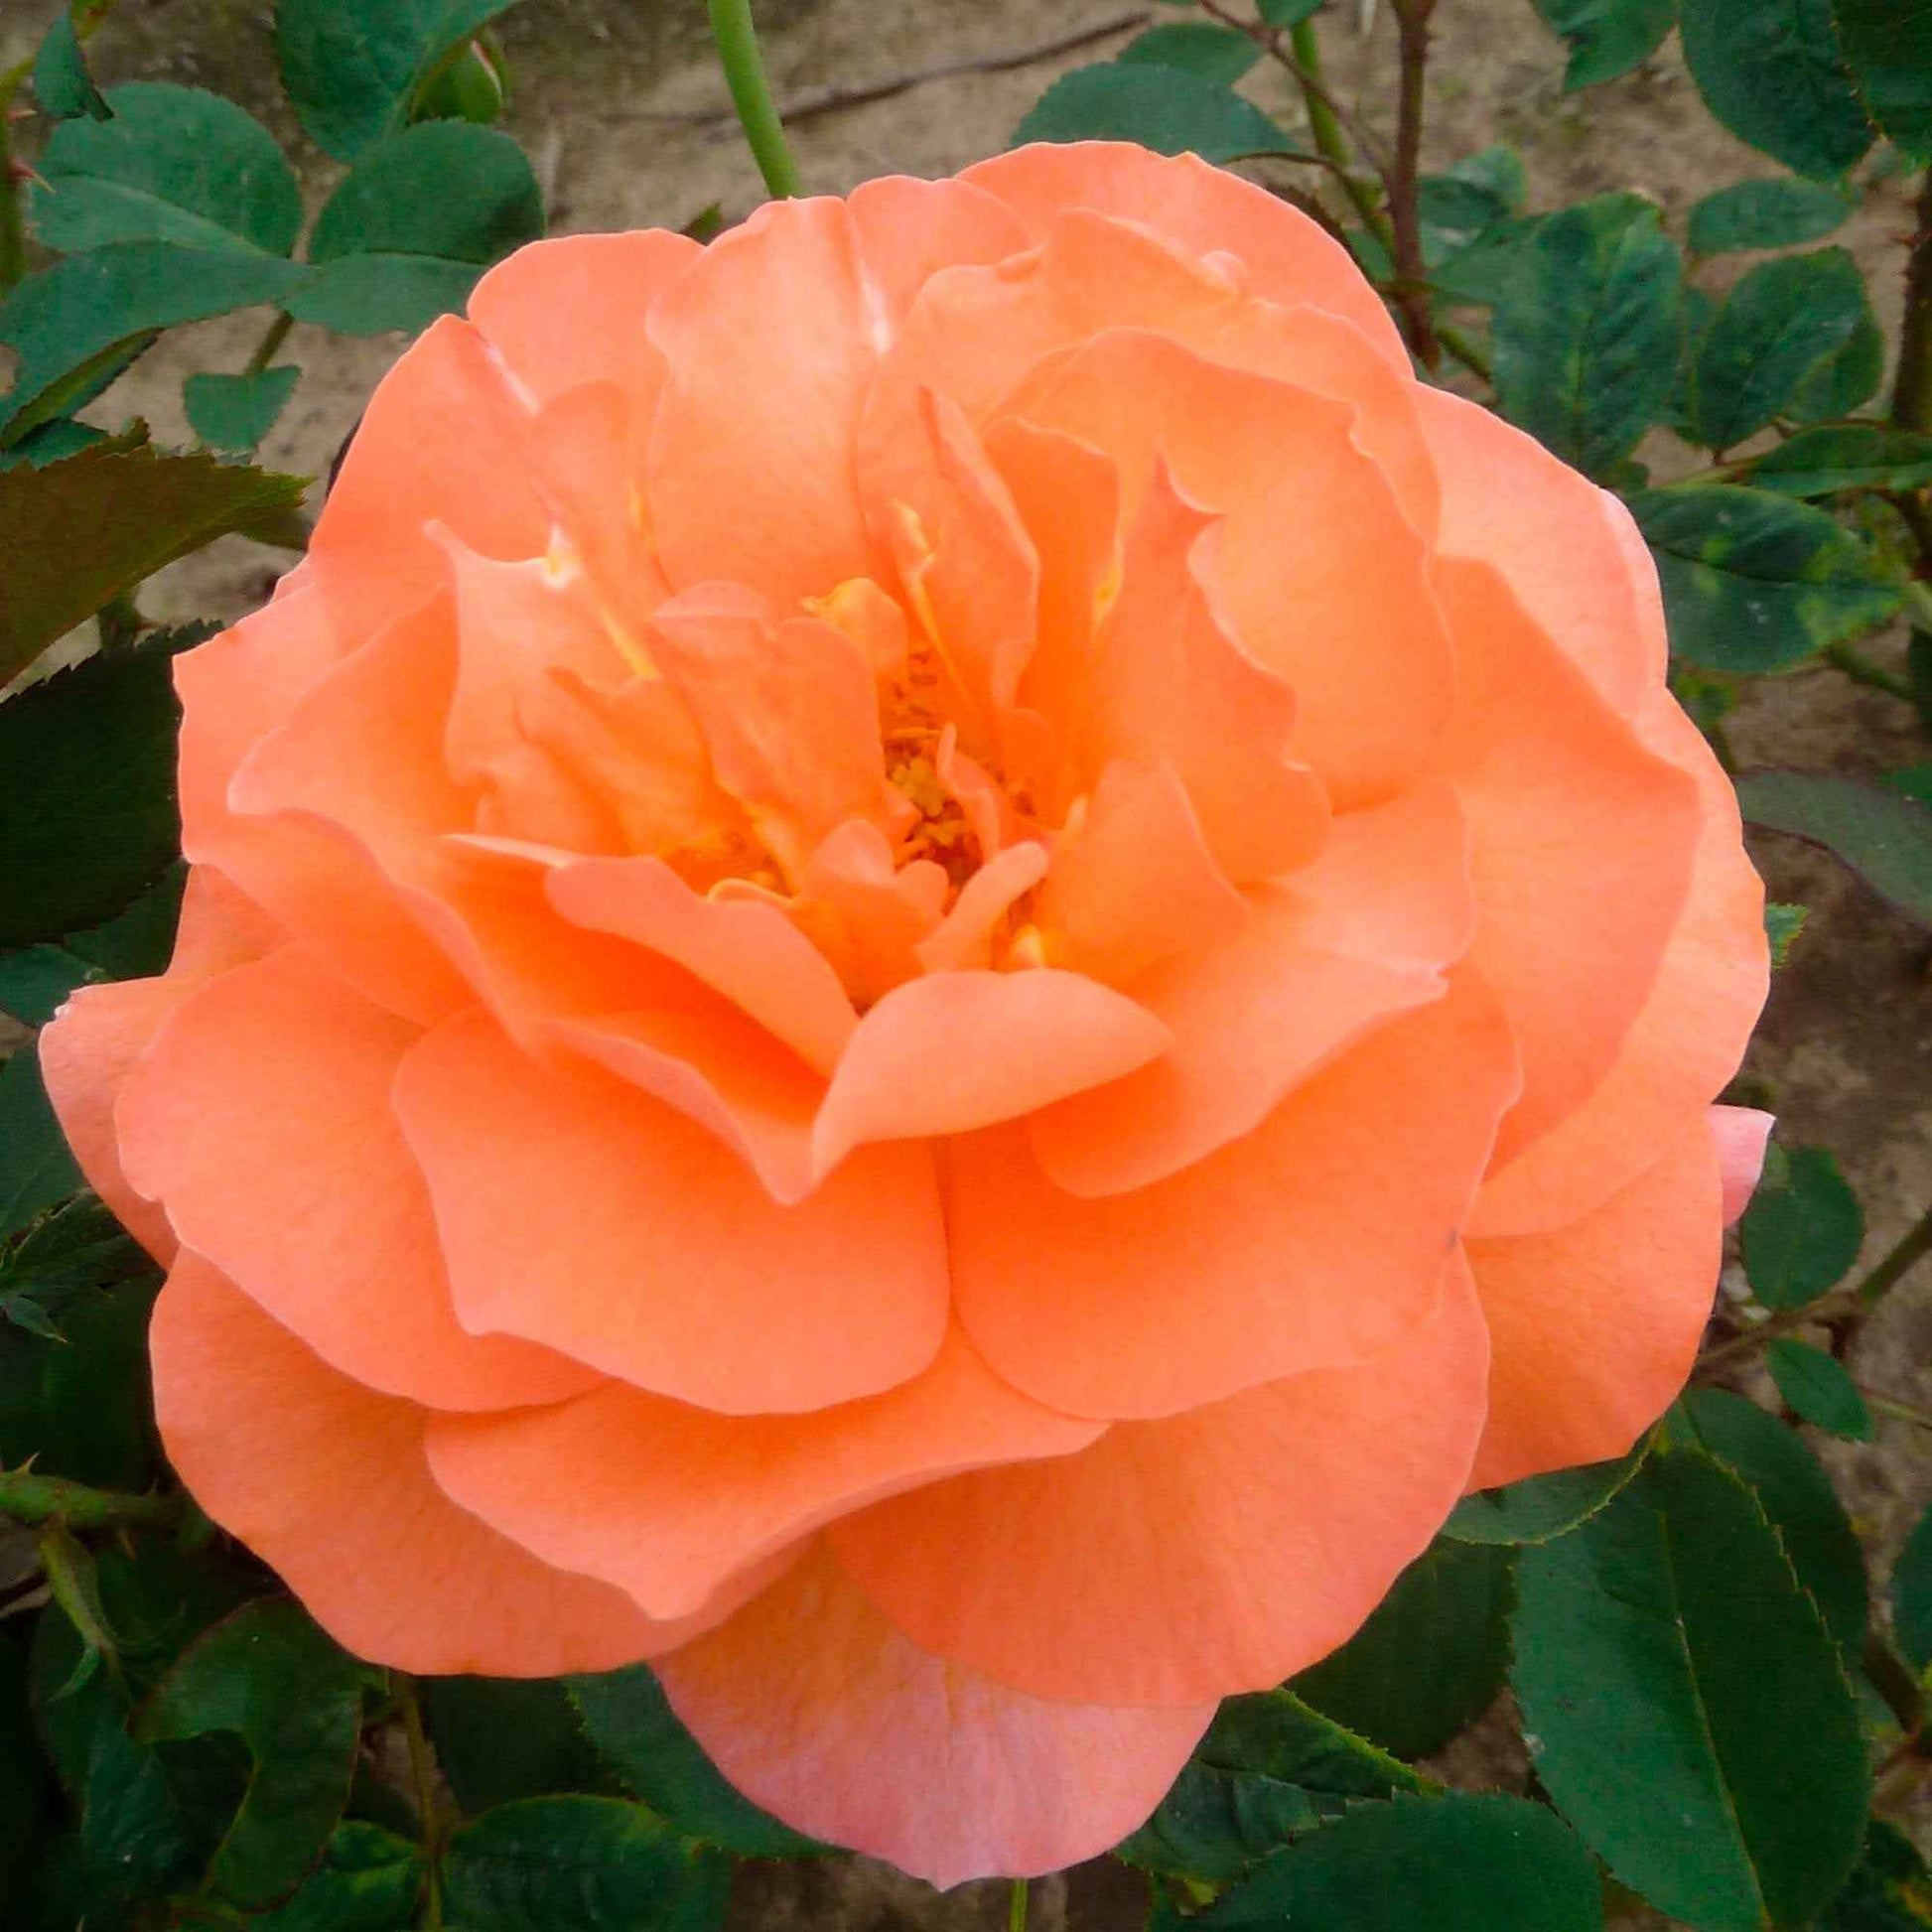 Rosier à grandes fleurs Rosa 'Tea Time'®  Orangé - Plantes d'extérieur